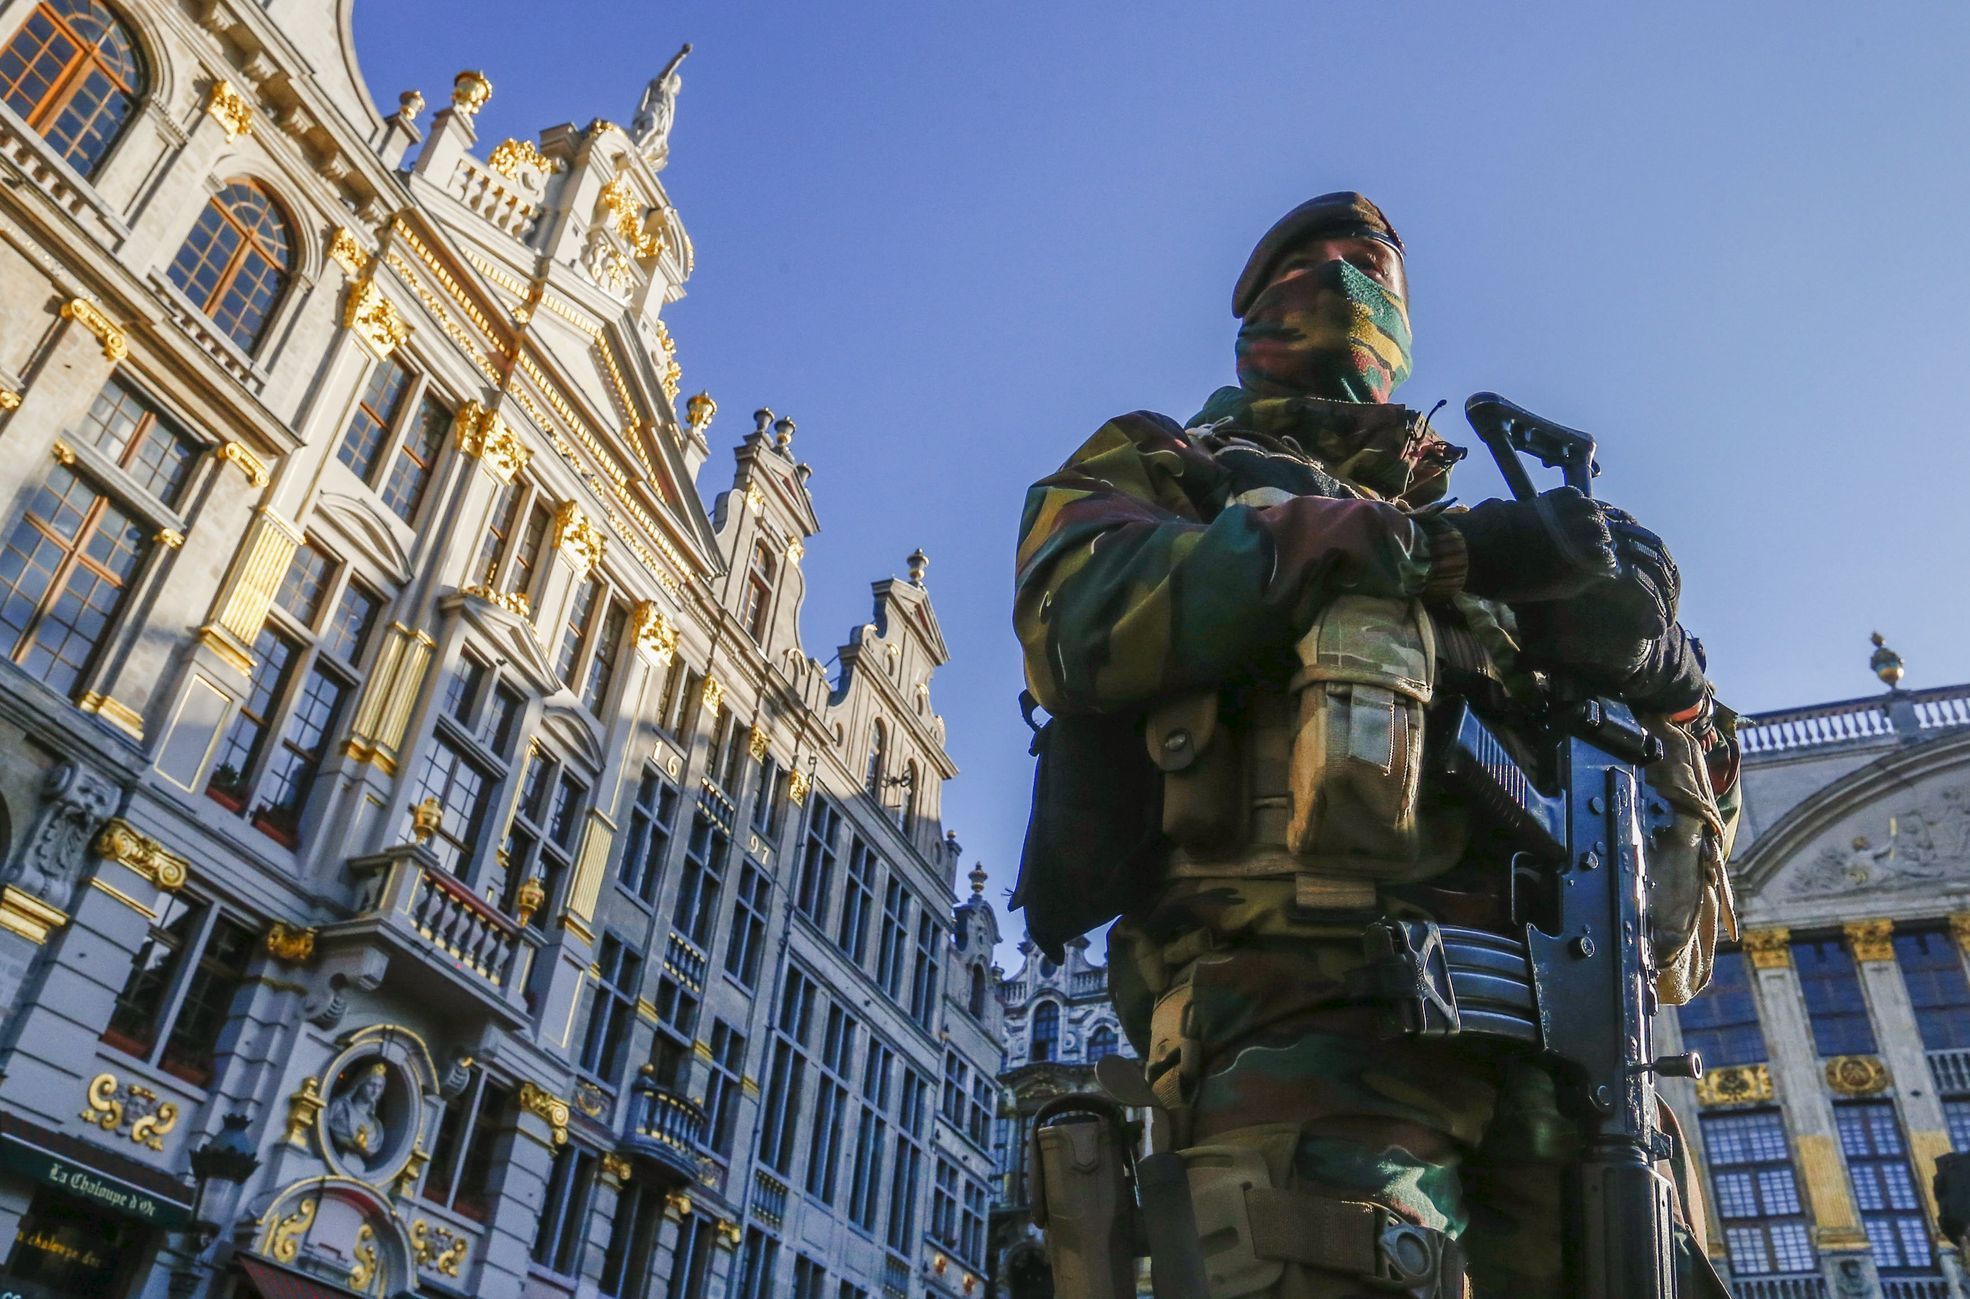 Belgie - Brusel - voják - armáda